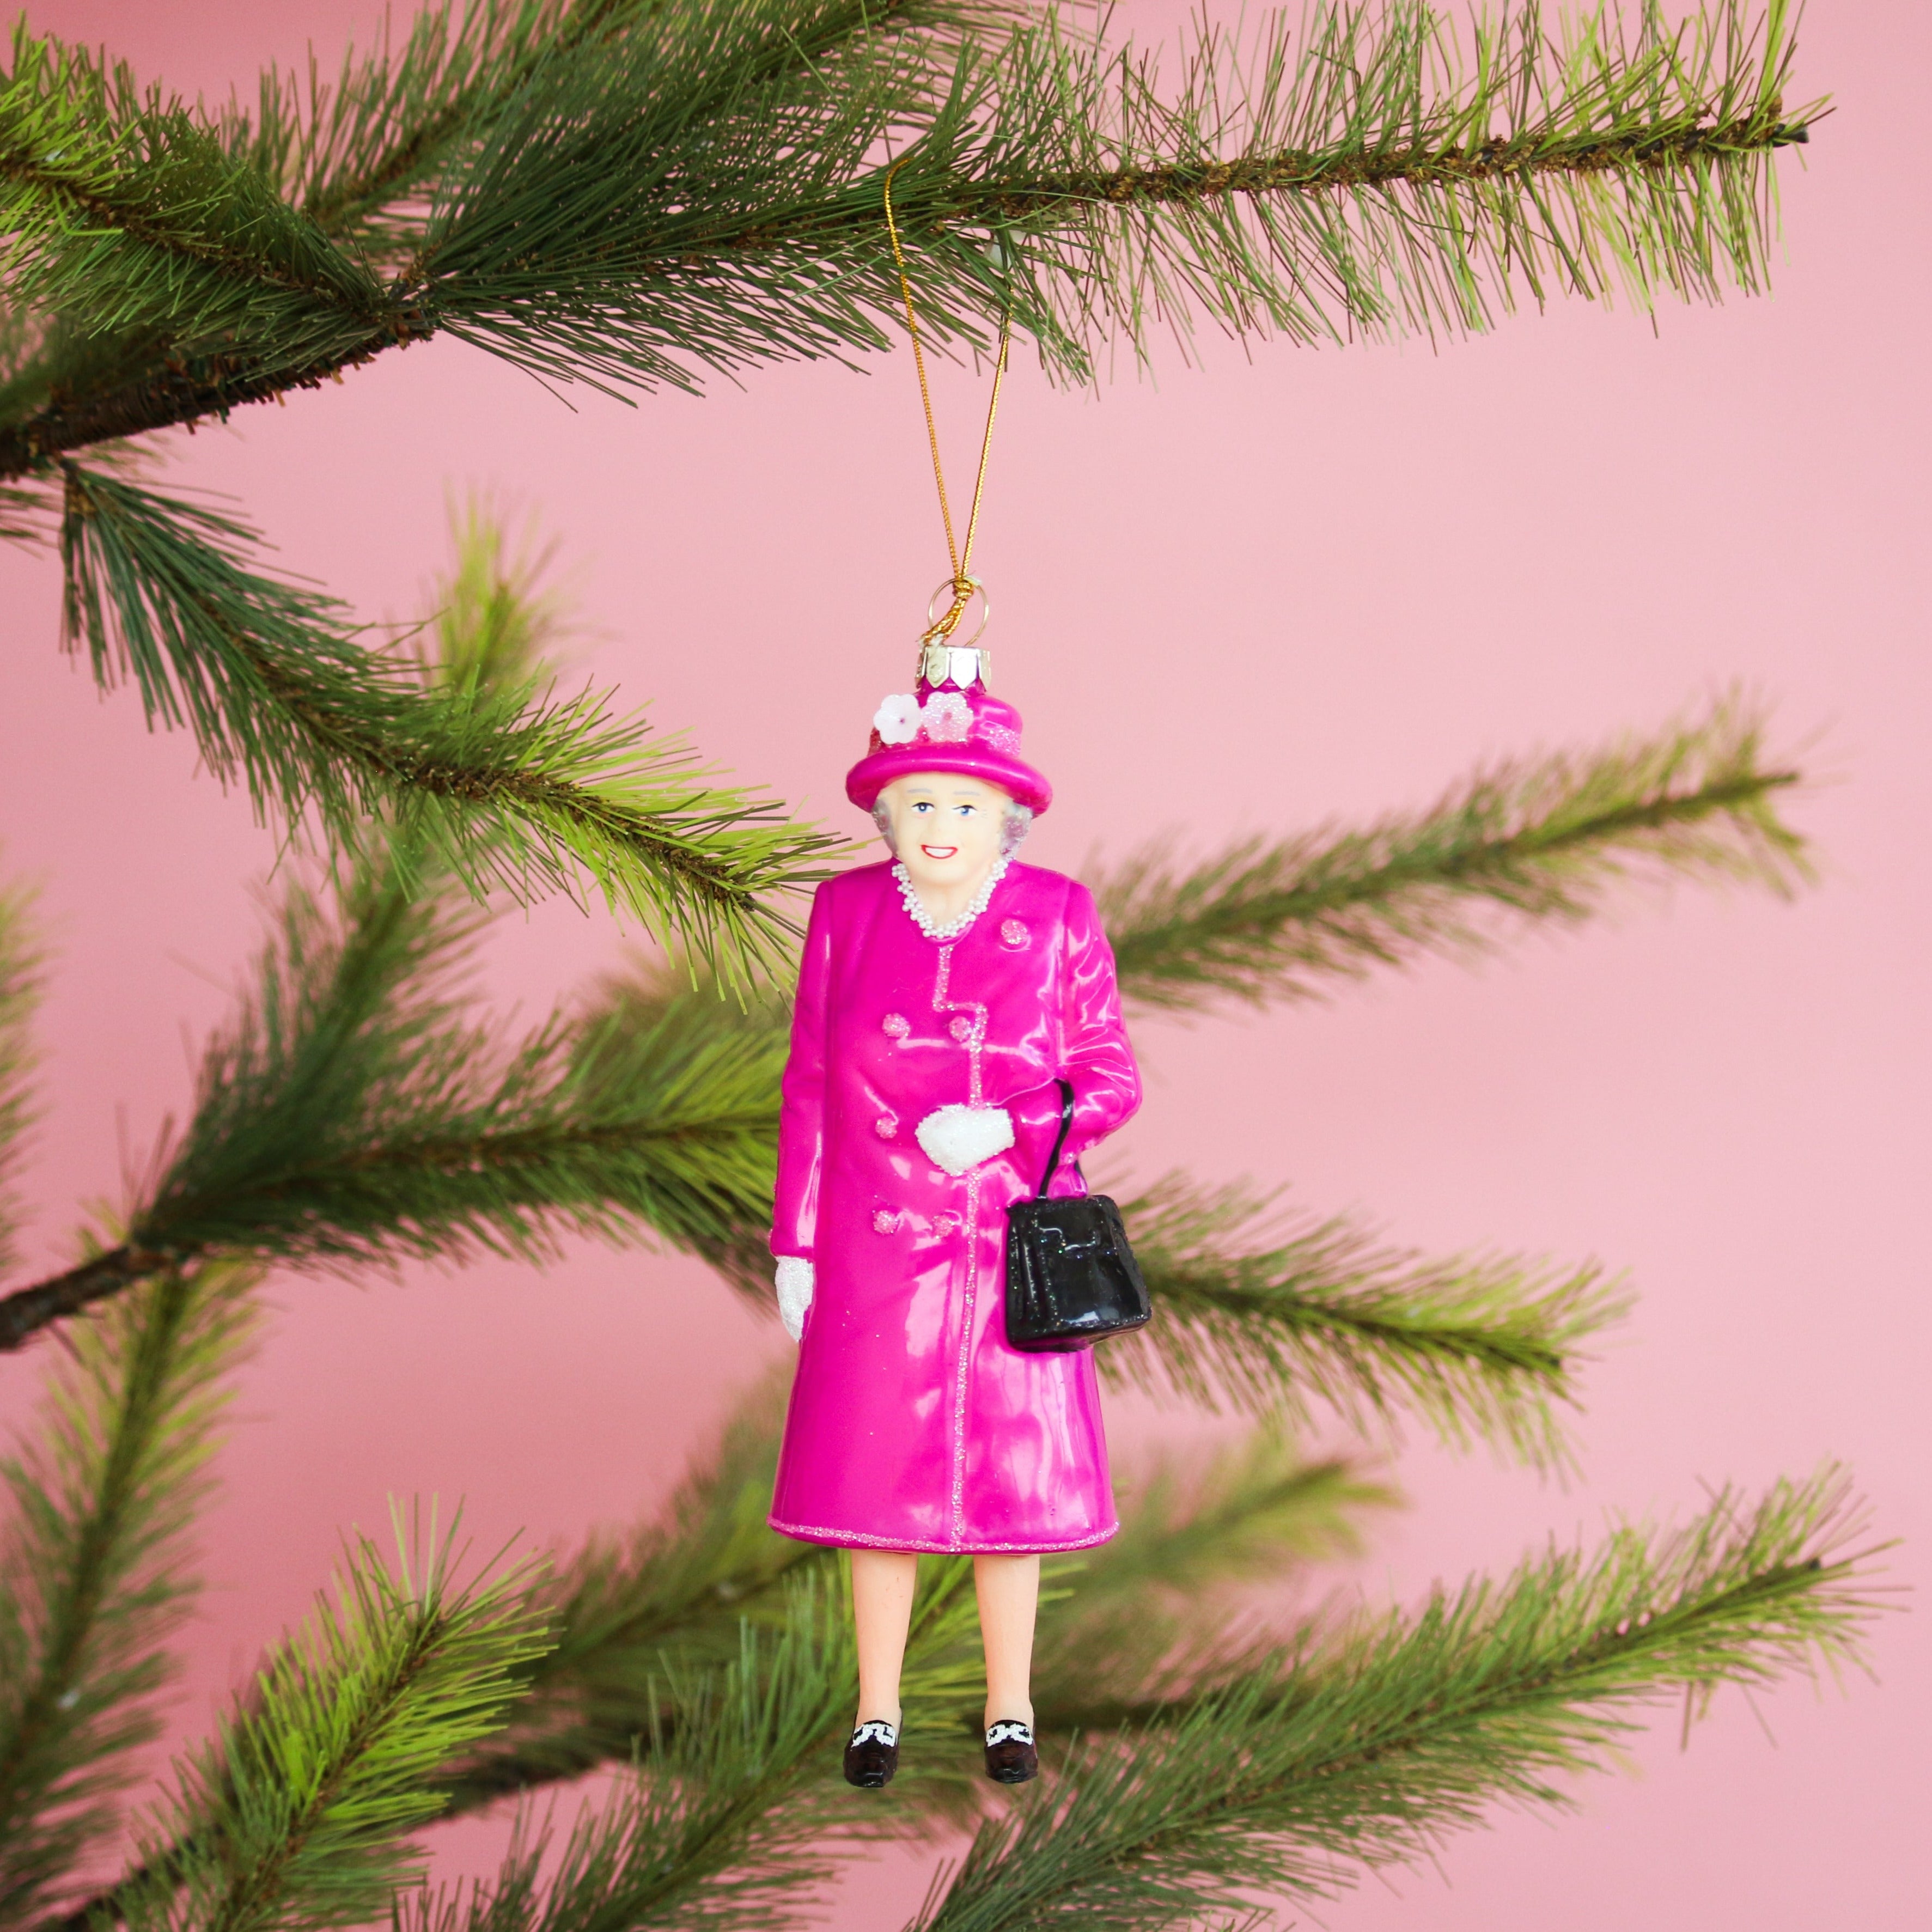 Queen Elizabeth II Assorted Ornament